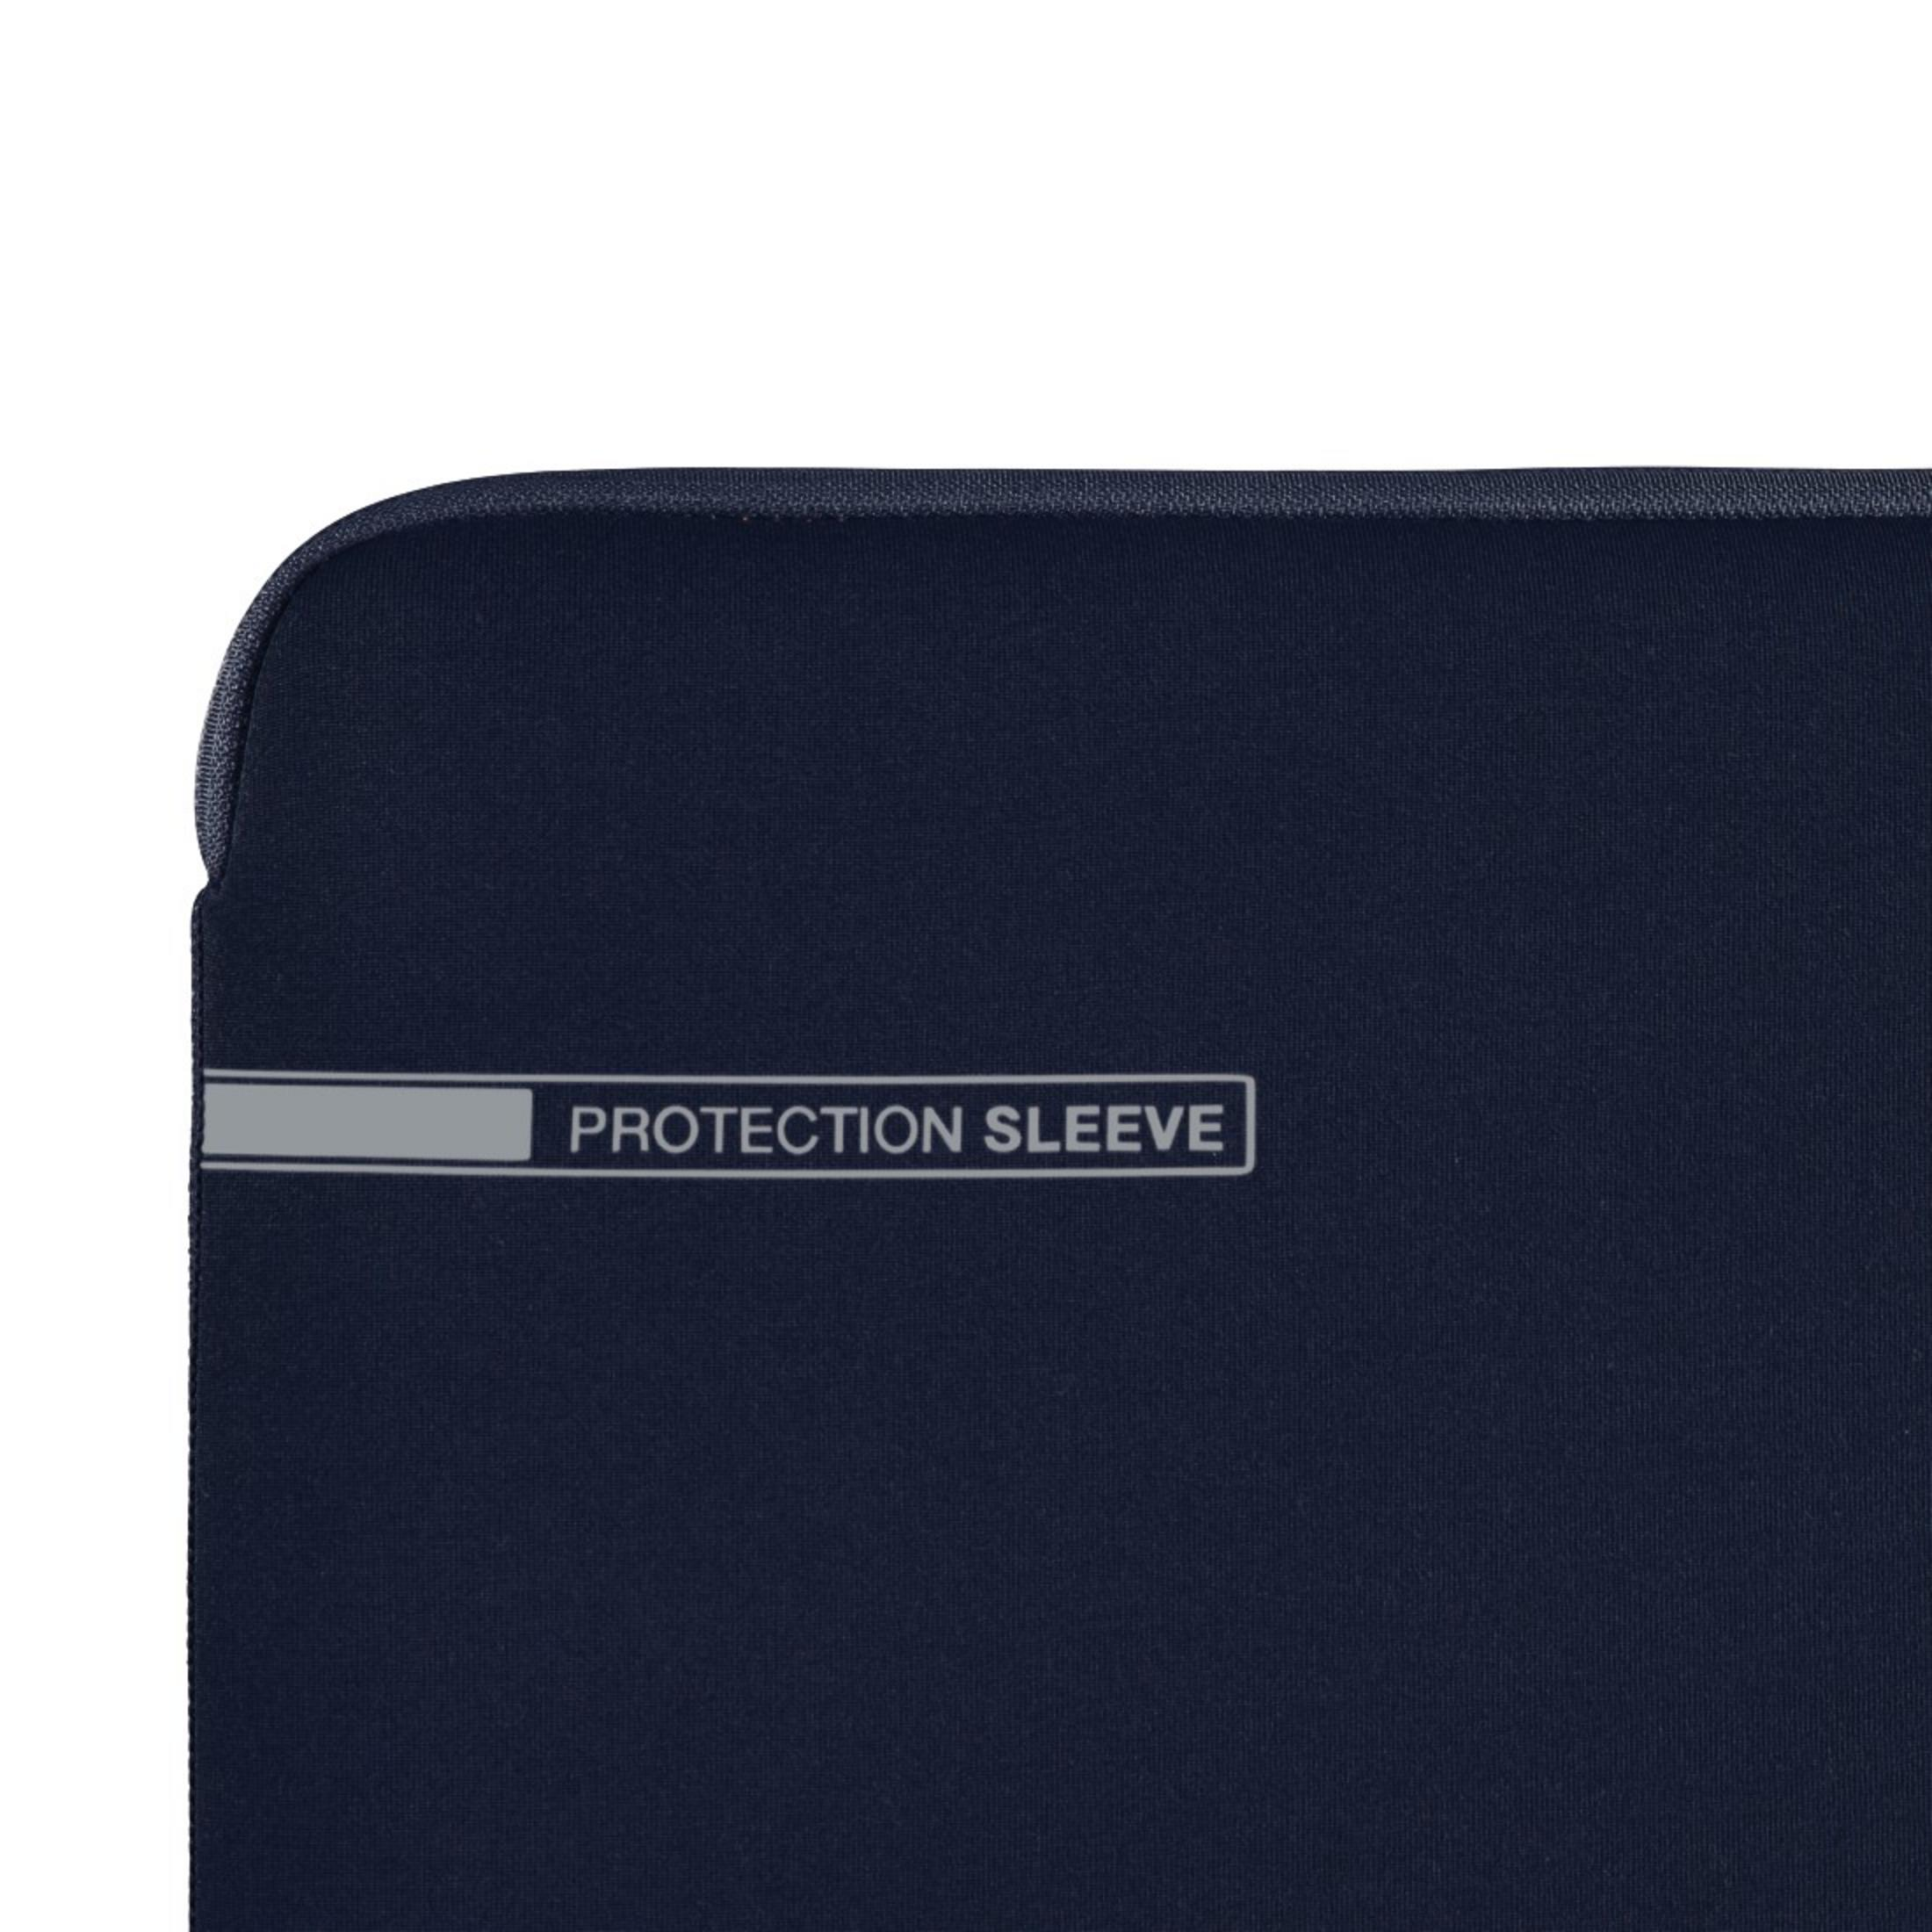 HAMA 101553 NB-SLE NEO Blau/Orange BL 13.3 Notebooktasche für Sleeve Universal Neopren